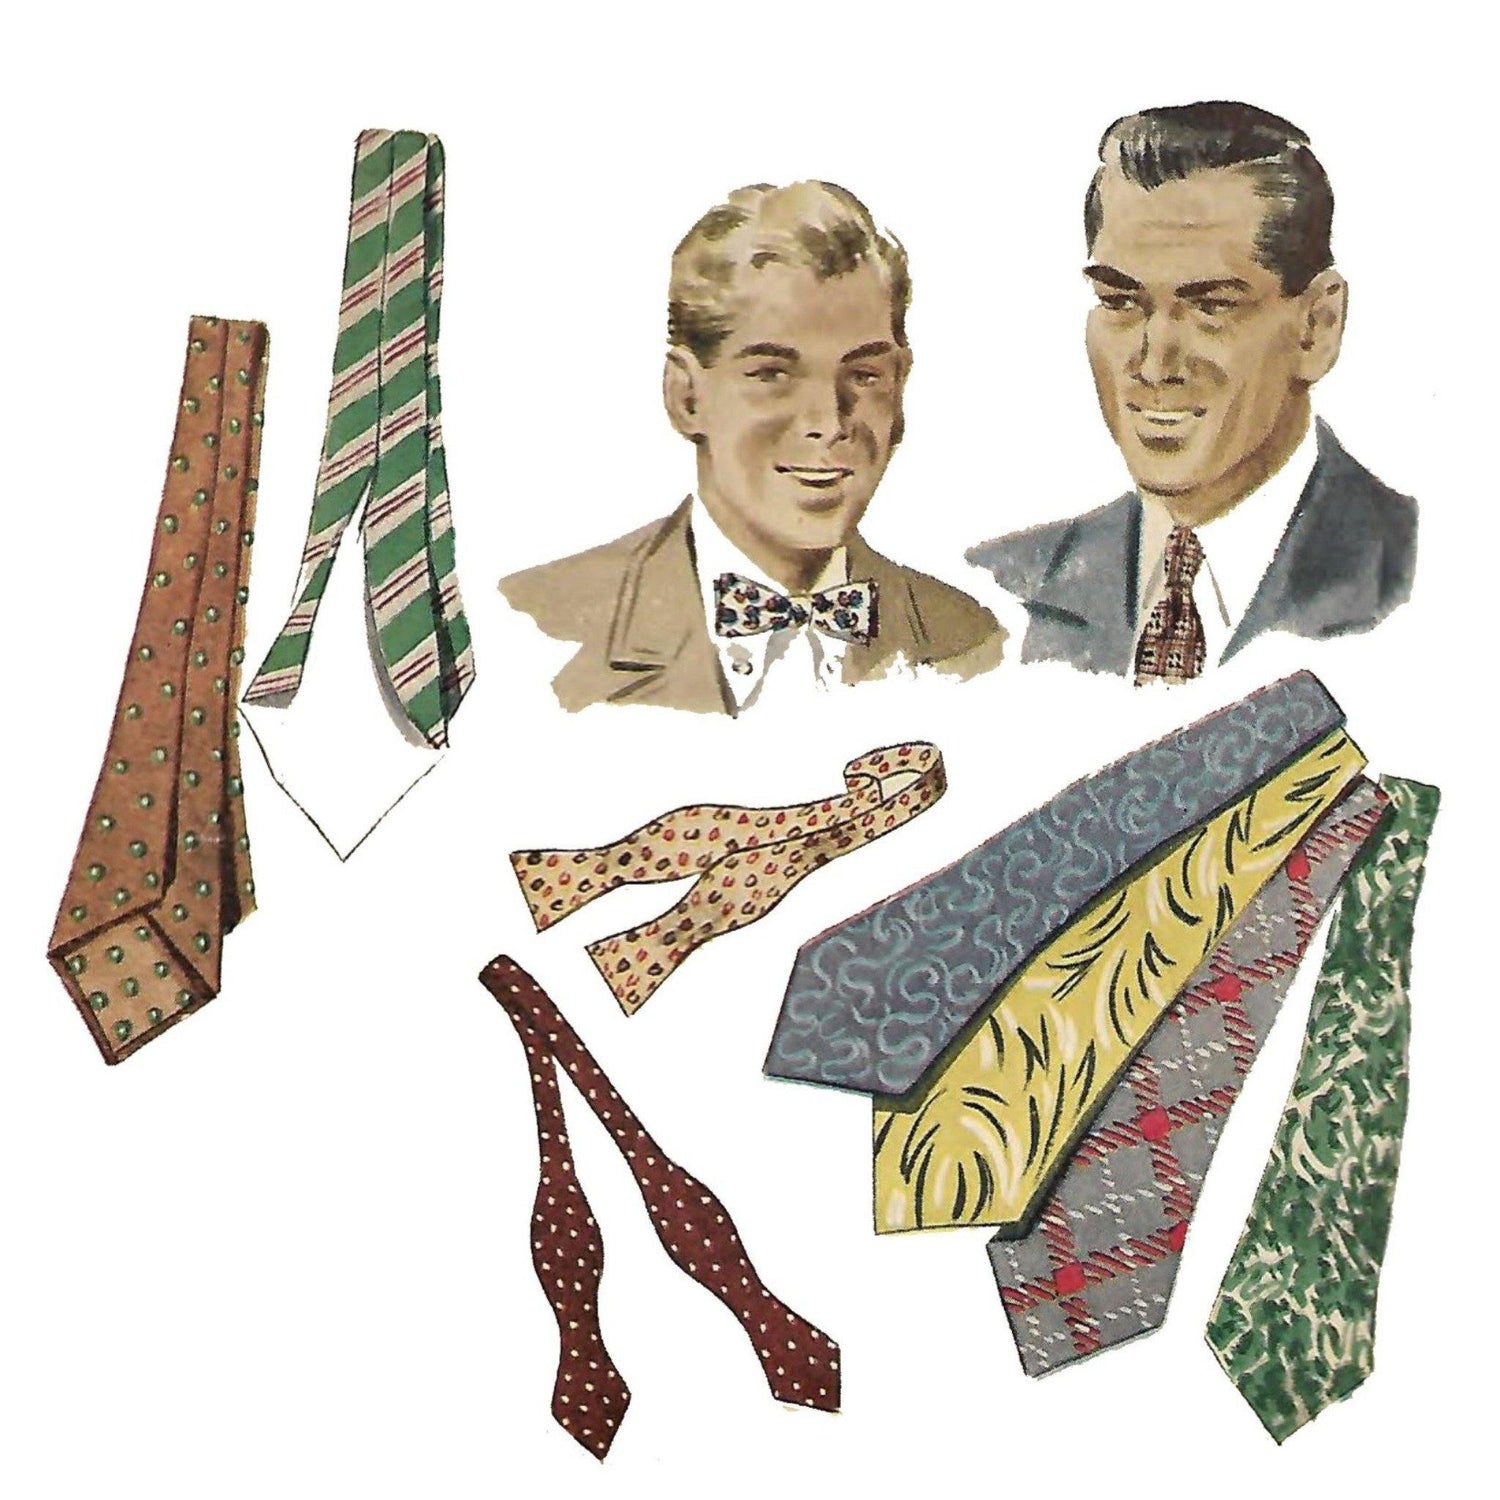 Sewing pattern of men's ties